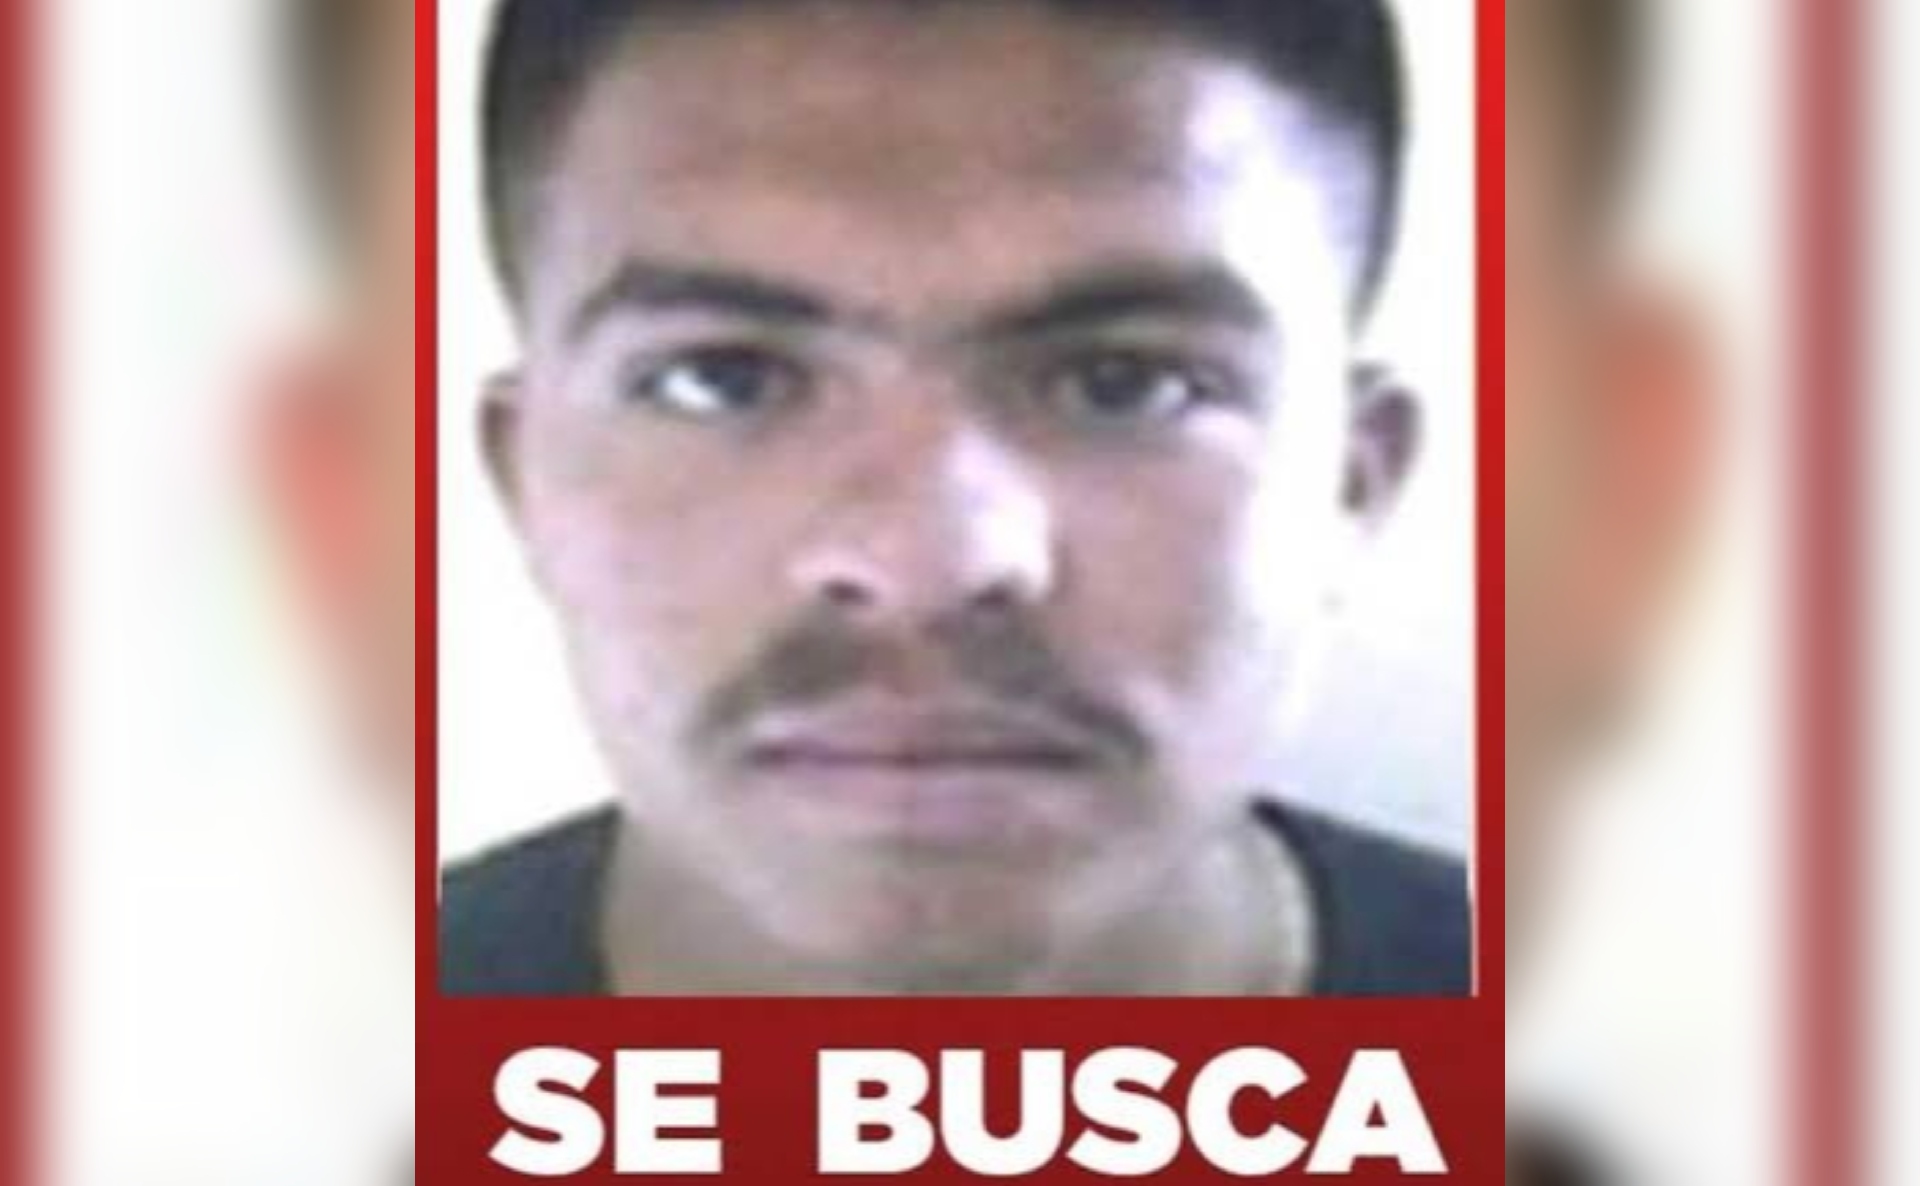 A el Chueco se le reconoce como el responsable de otros homicidios y delincuencia organizada 8Foto: Archivo)